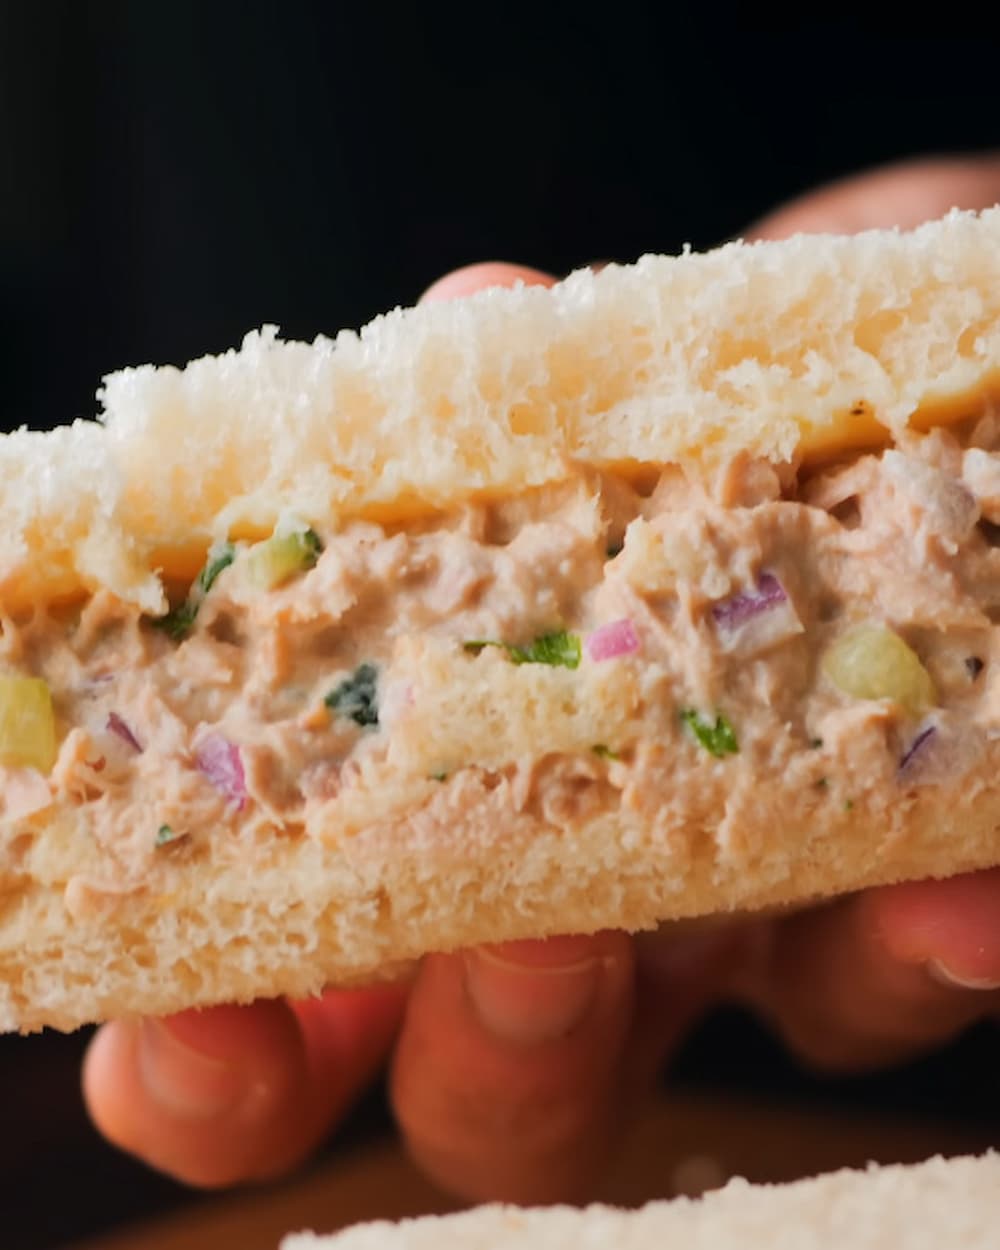 a piece of tuna sandwich